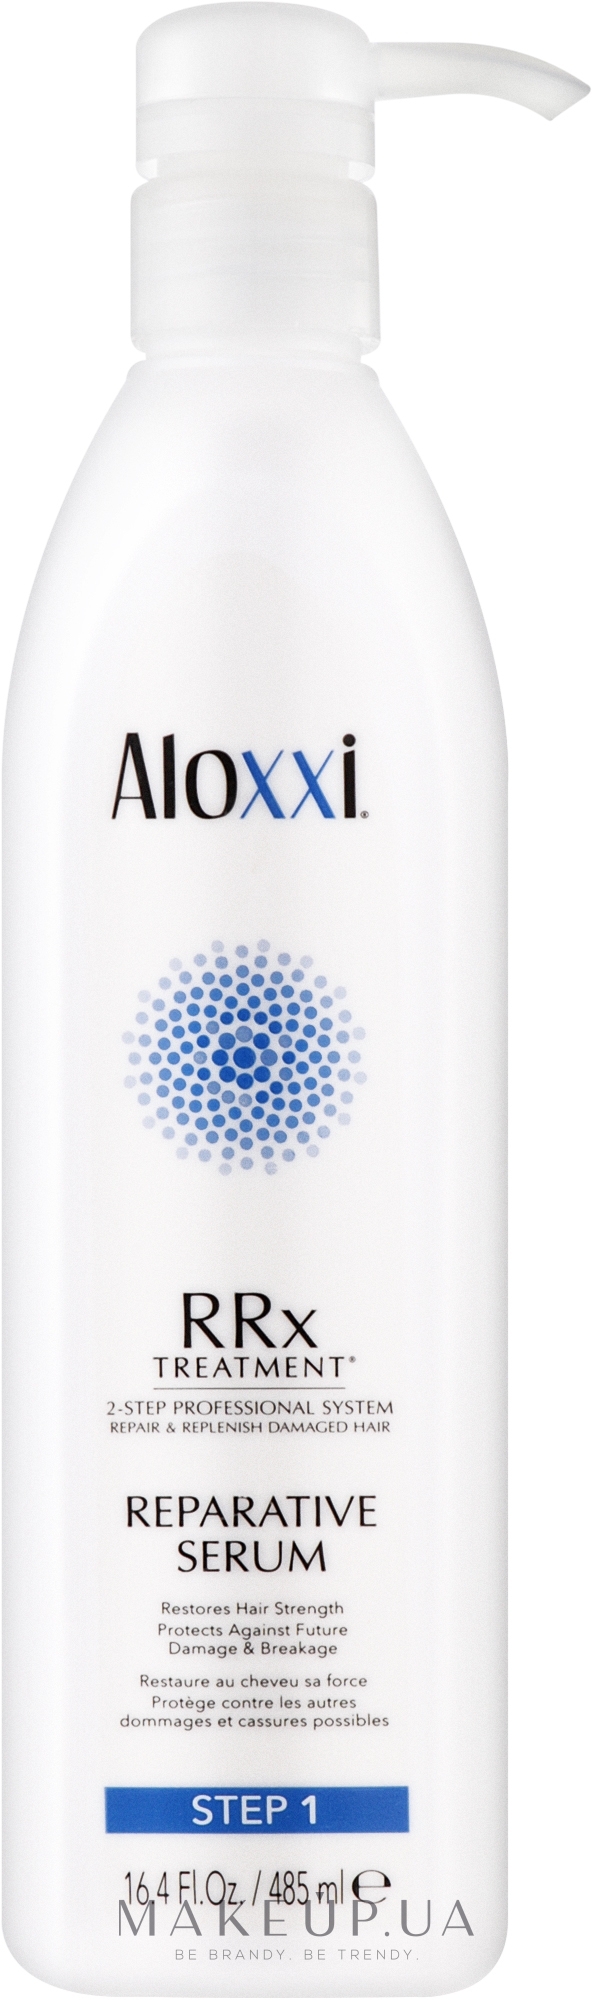 Відновлювальна сироватка для волосся - Aloxxi Rrx Treatment Reparative Serum — фото 485ml